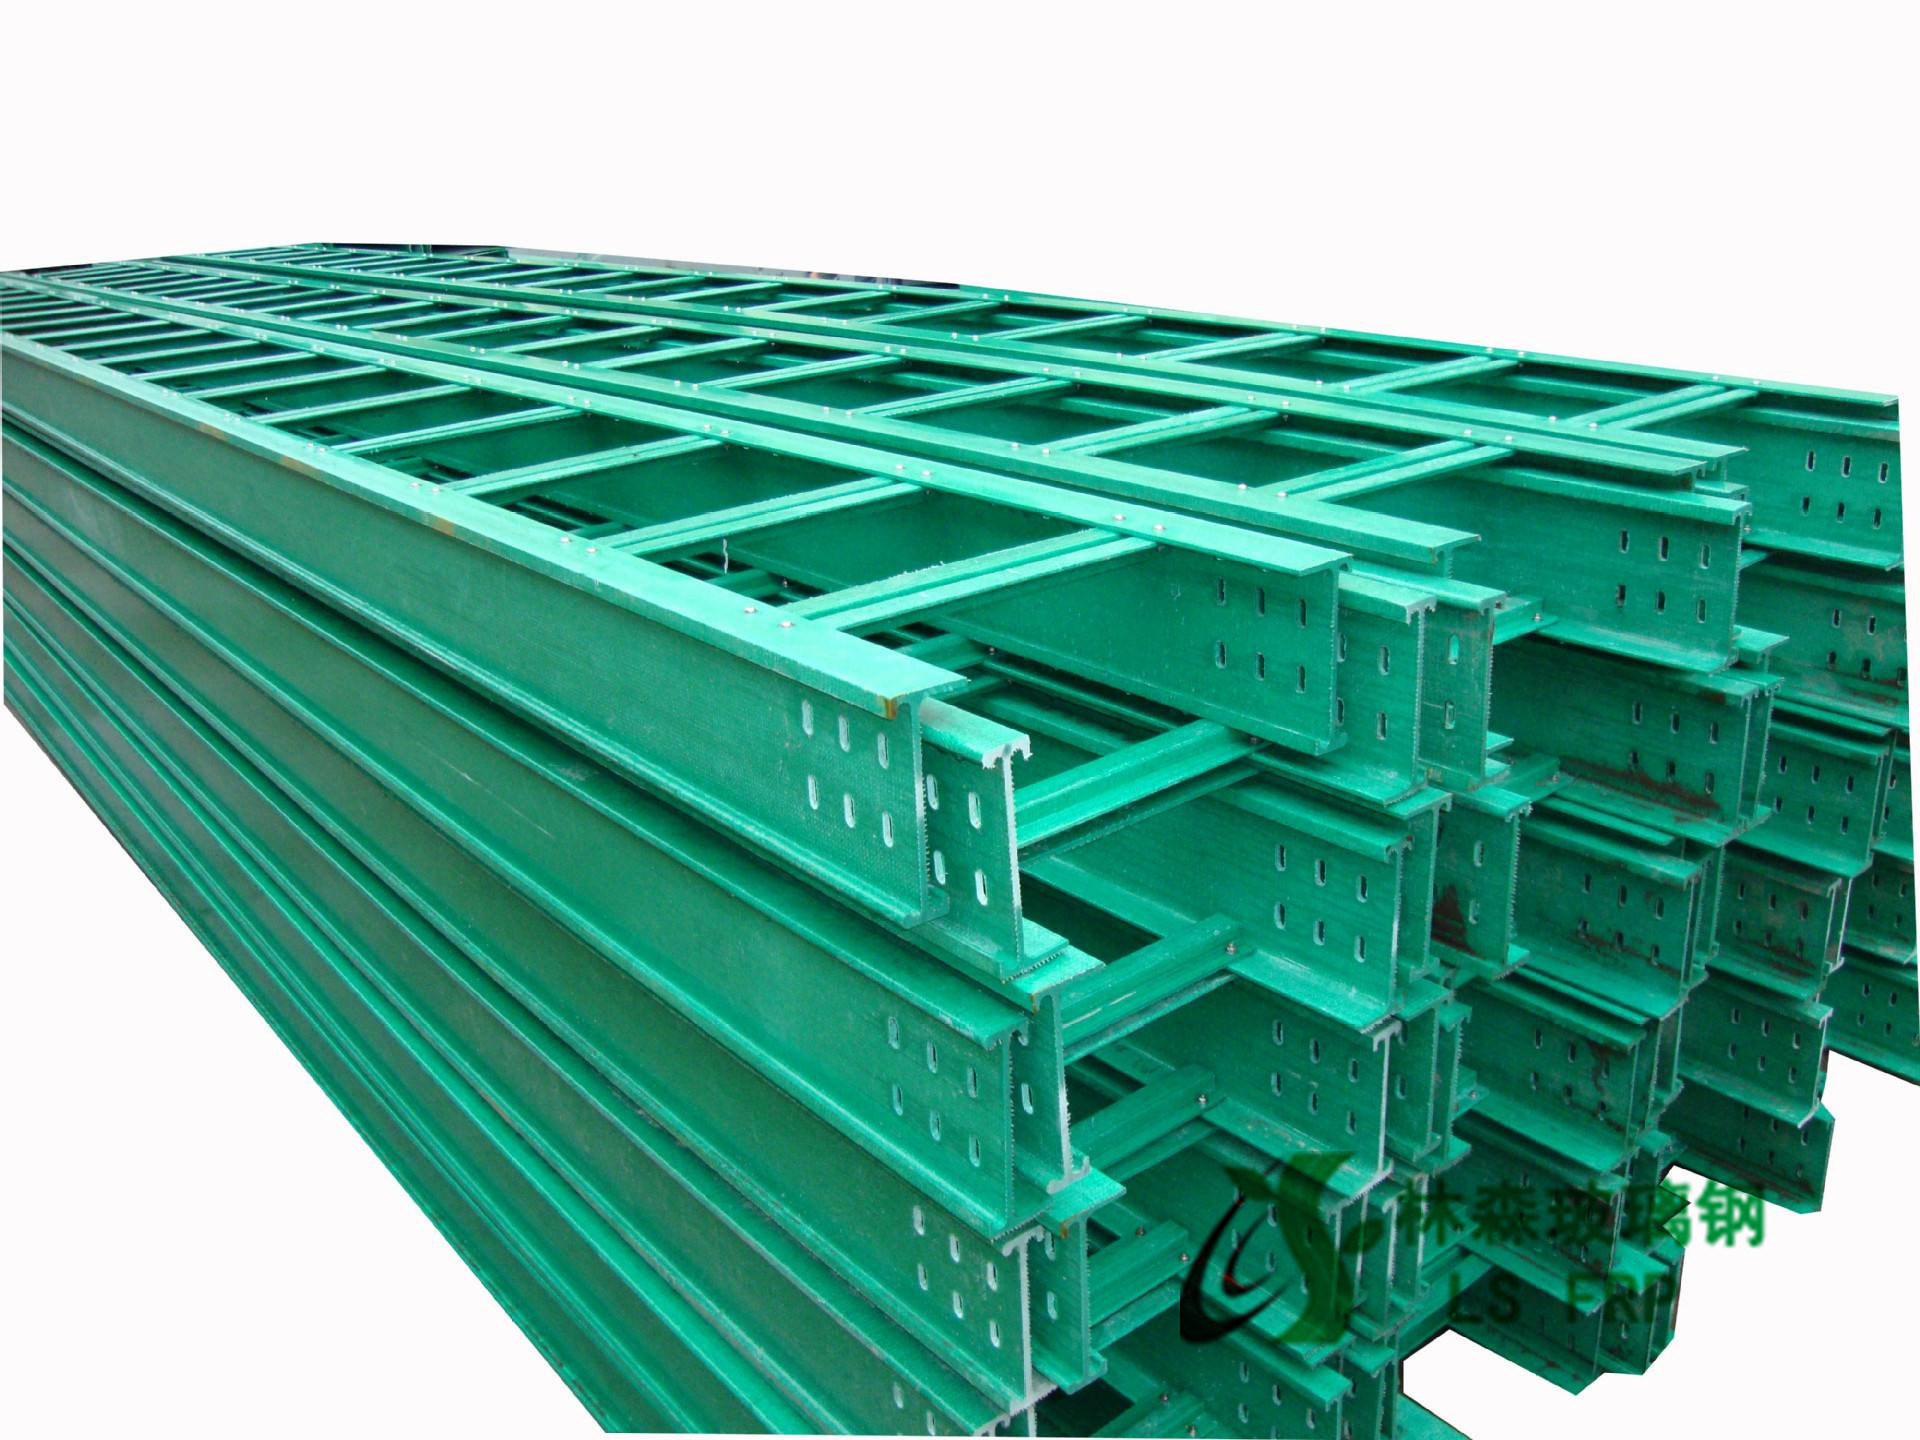 玻璃钢电缆桥架江苏林森生产供应厂家批发梯式玻璃钢电缆桥架